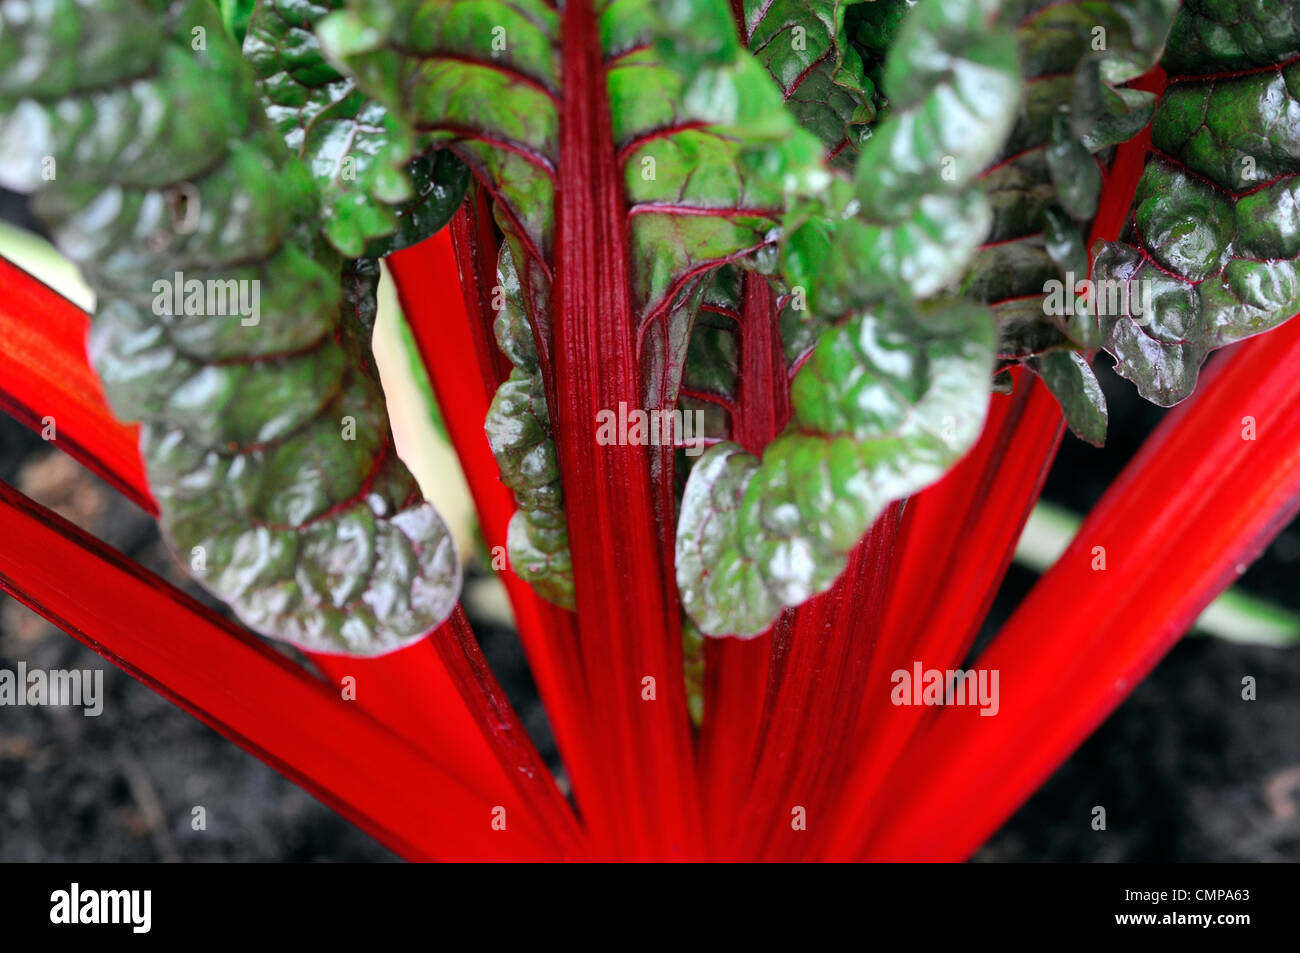 Beta vulgaris rhubarb chard rubis usine plans rapprochés de plus en plus de légumes comestibles portraits Tiges rouge vif veiné vert feuilles nervures Banque D'Images